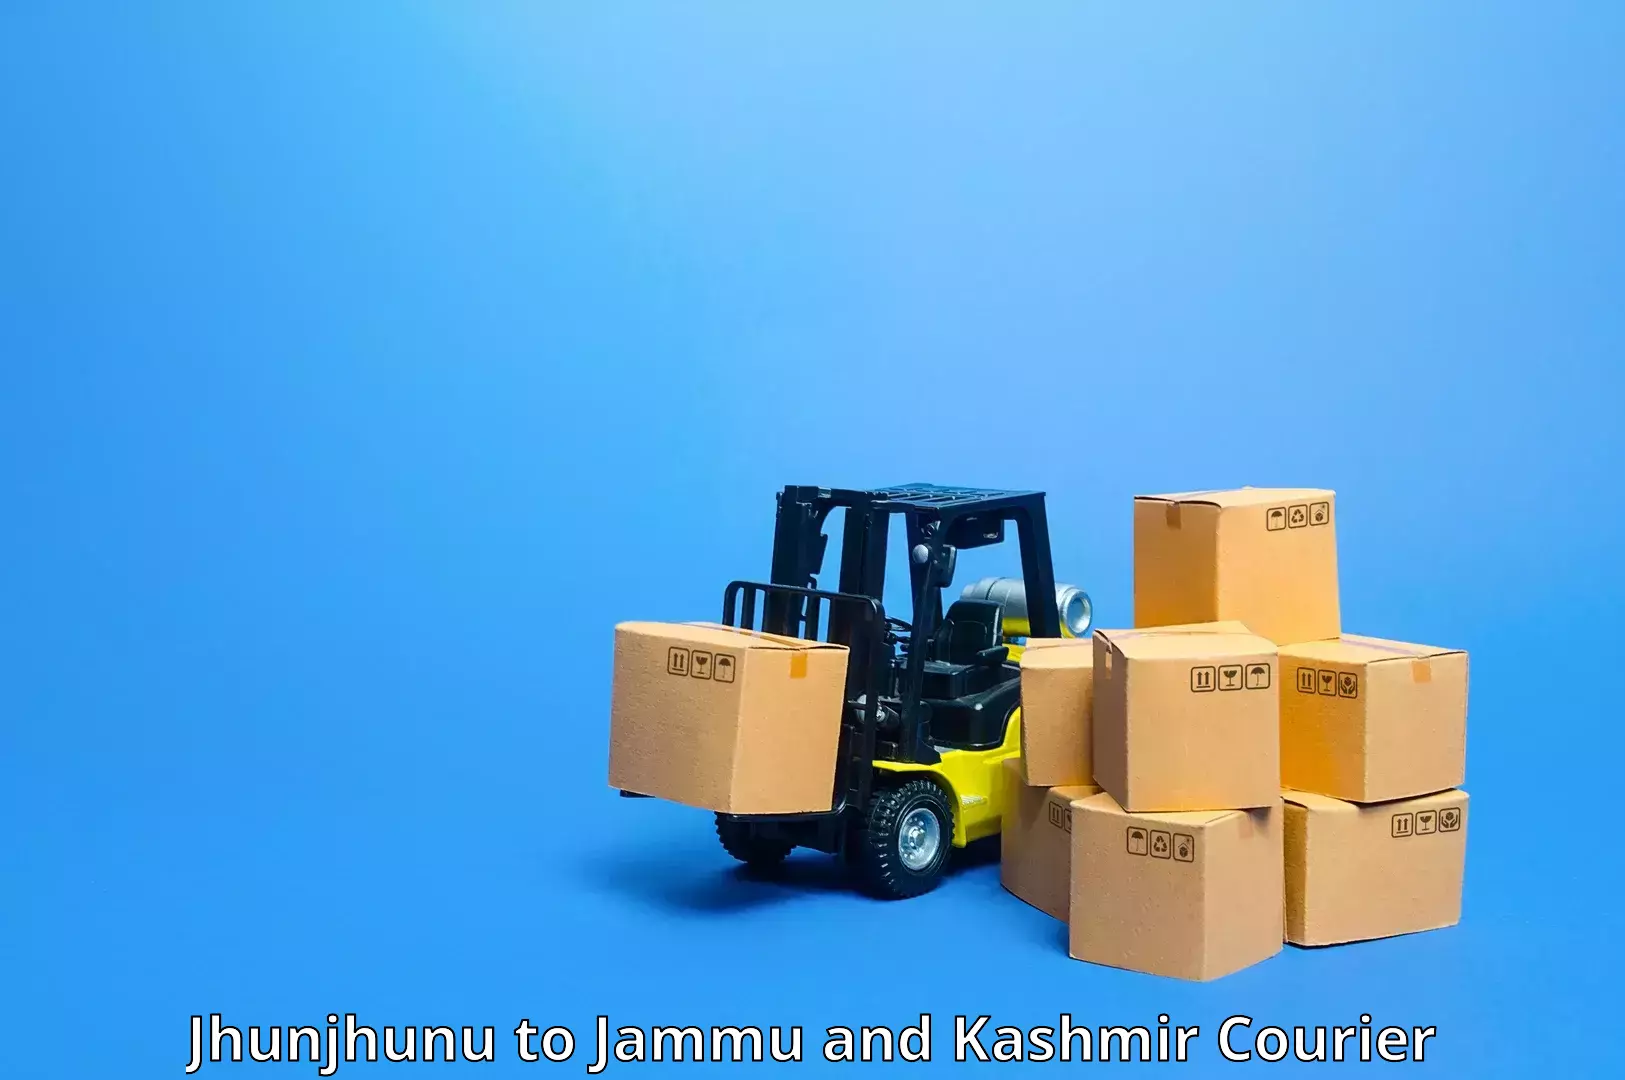 Secure package delivery Jhunjhunu to Jammu and Kashmir